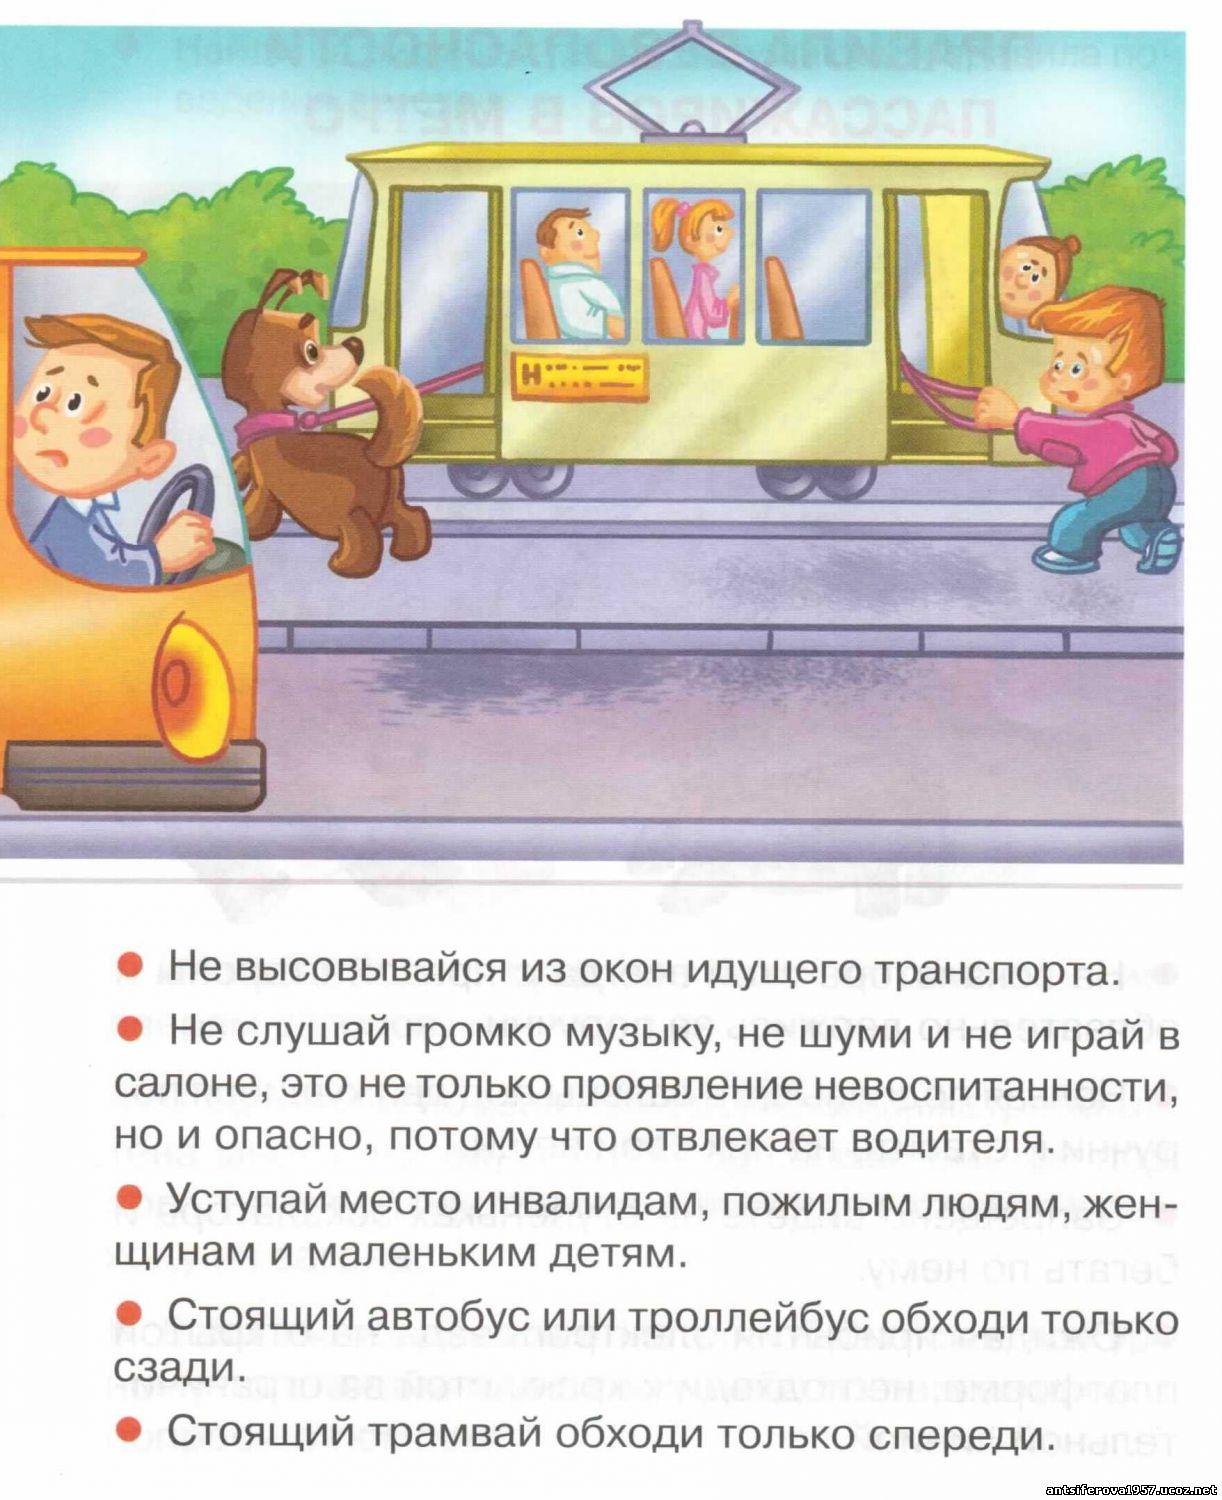 Обязанности общественного транспорта. Правила поведения в общественном транспорте. Безопасность пассажира в общественном транспорте. Безопасность детей в общественном транспорте. Поведение пассажиров в общественном транспорте.